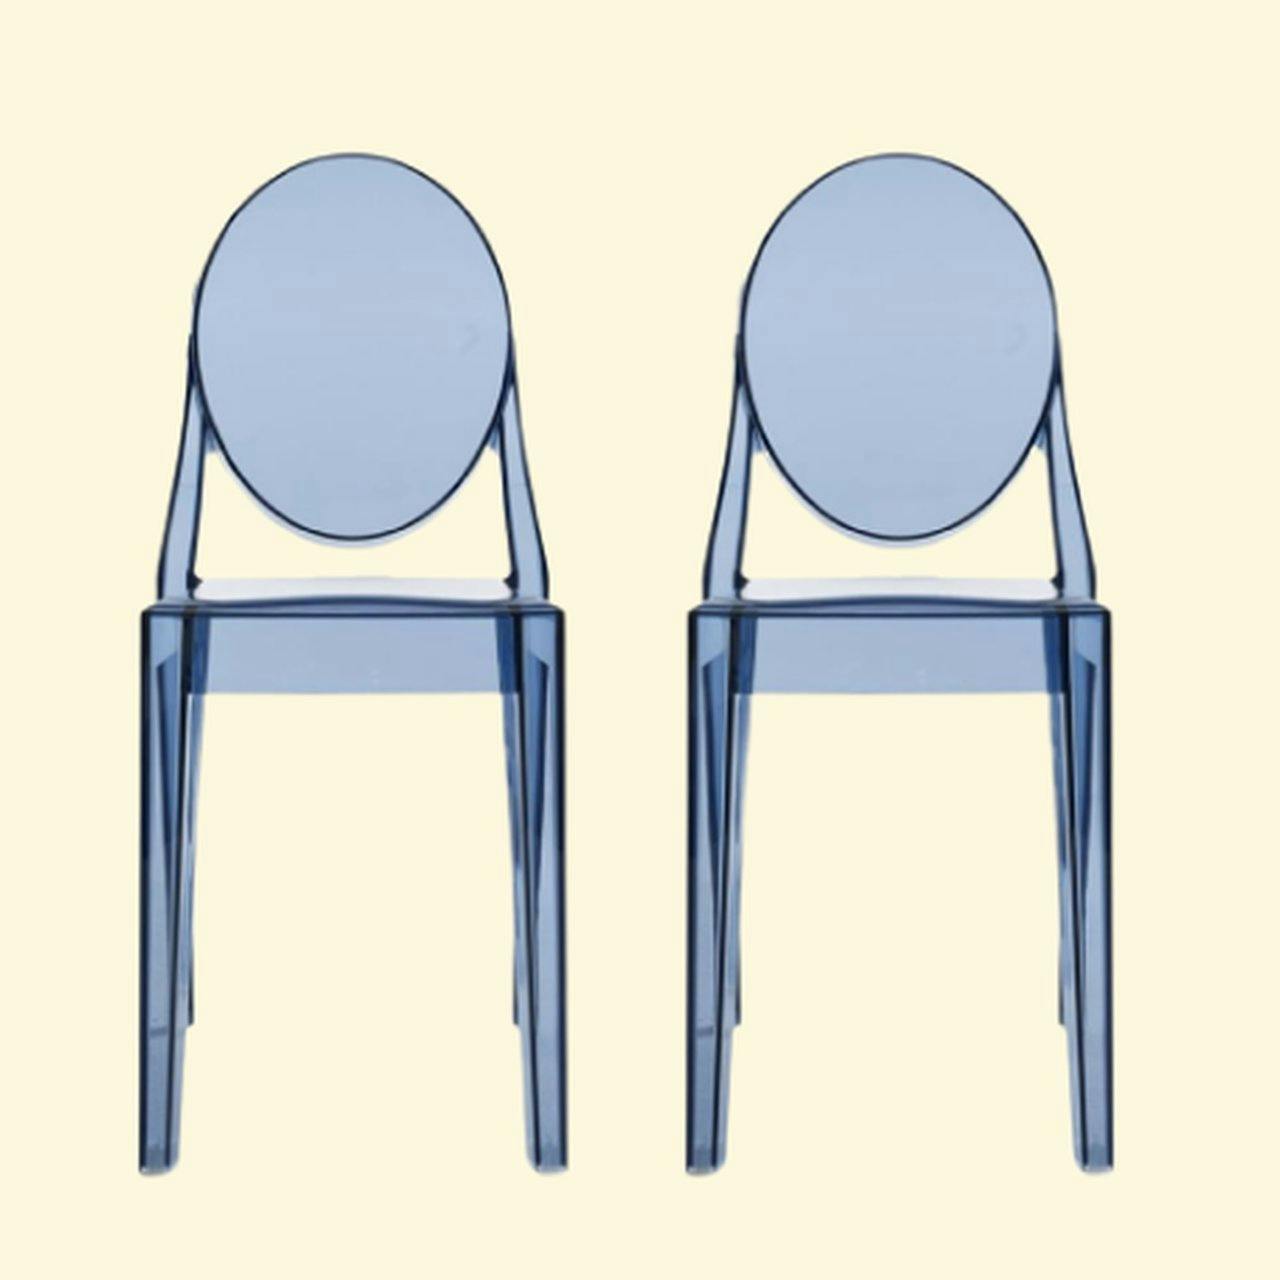 Ronald Schmitt Dining chairs